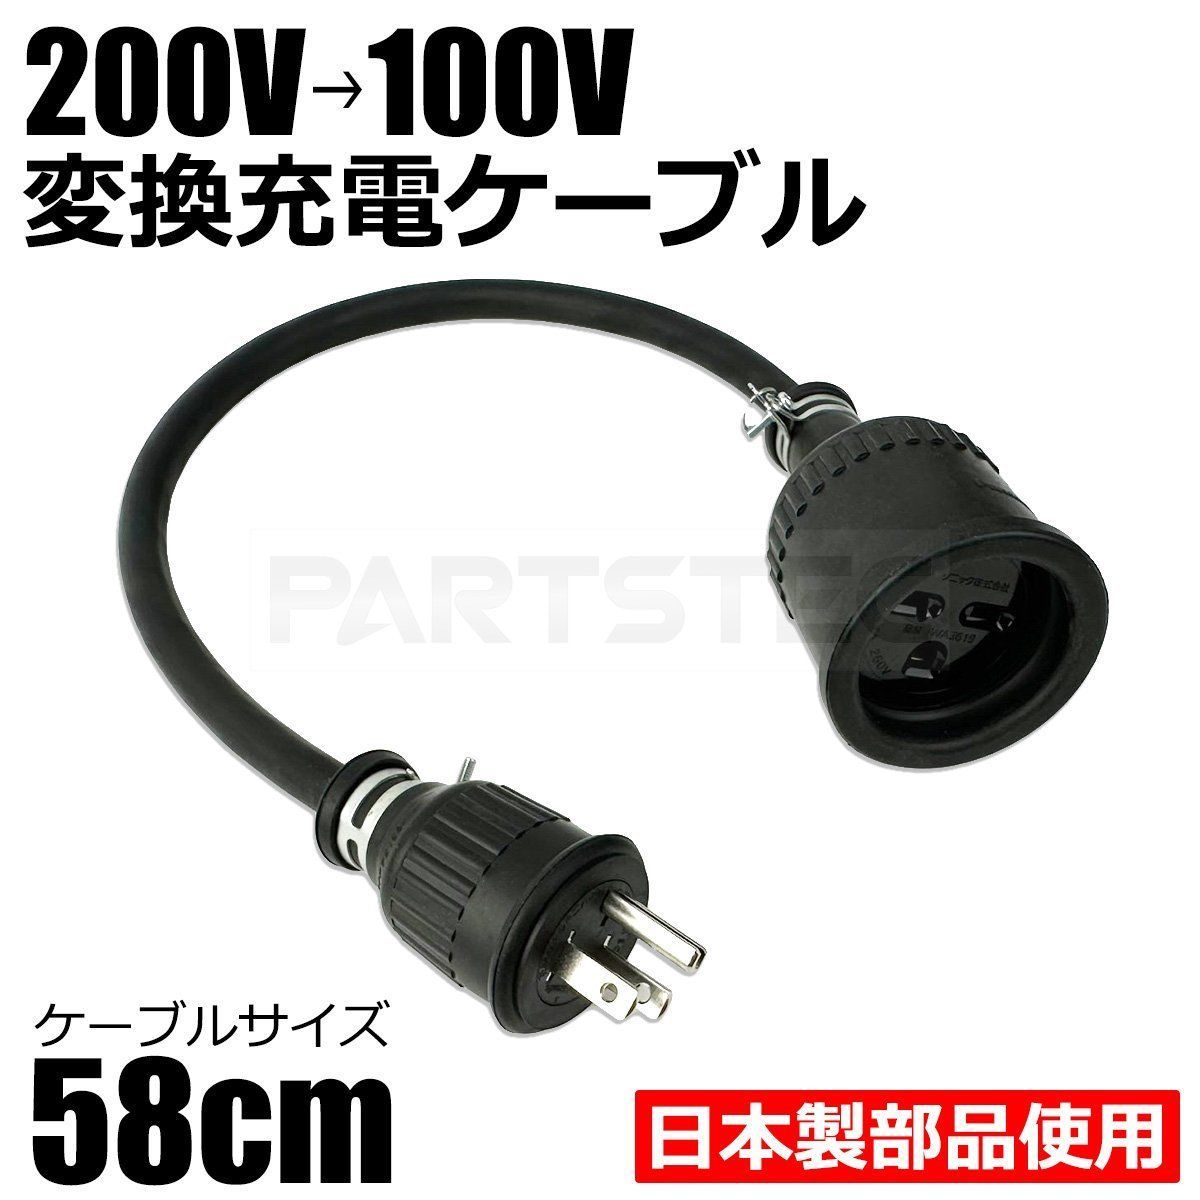 200V→100V 変換 EV 充電 ケーブル 58cm トヨタ プリウス PHV ZVW52